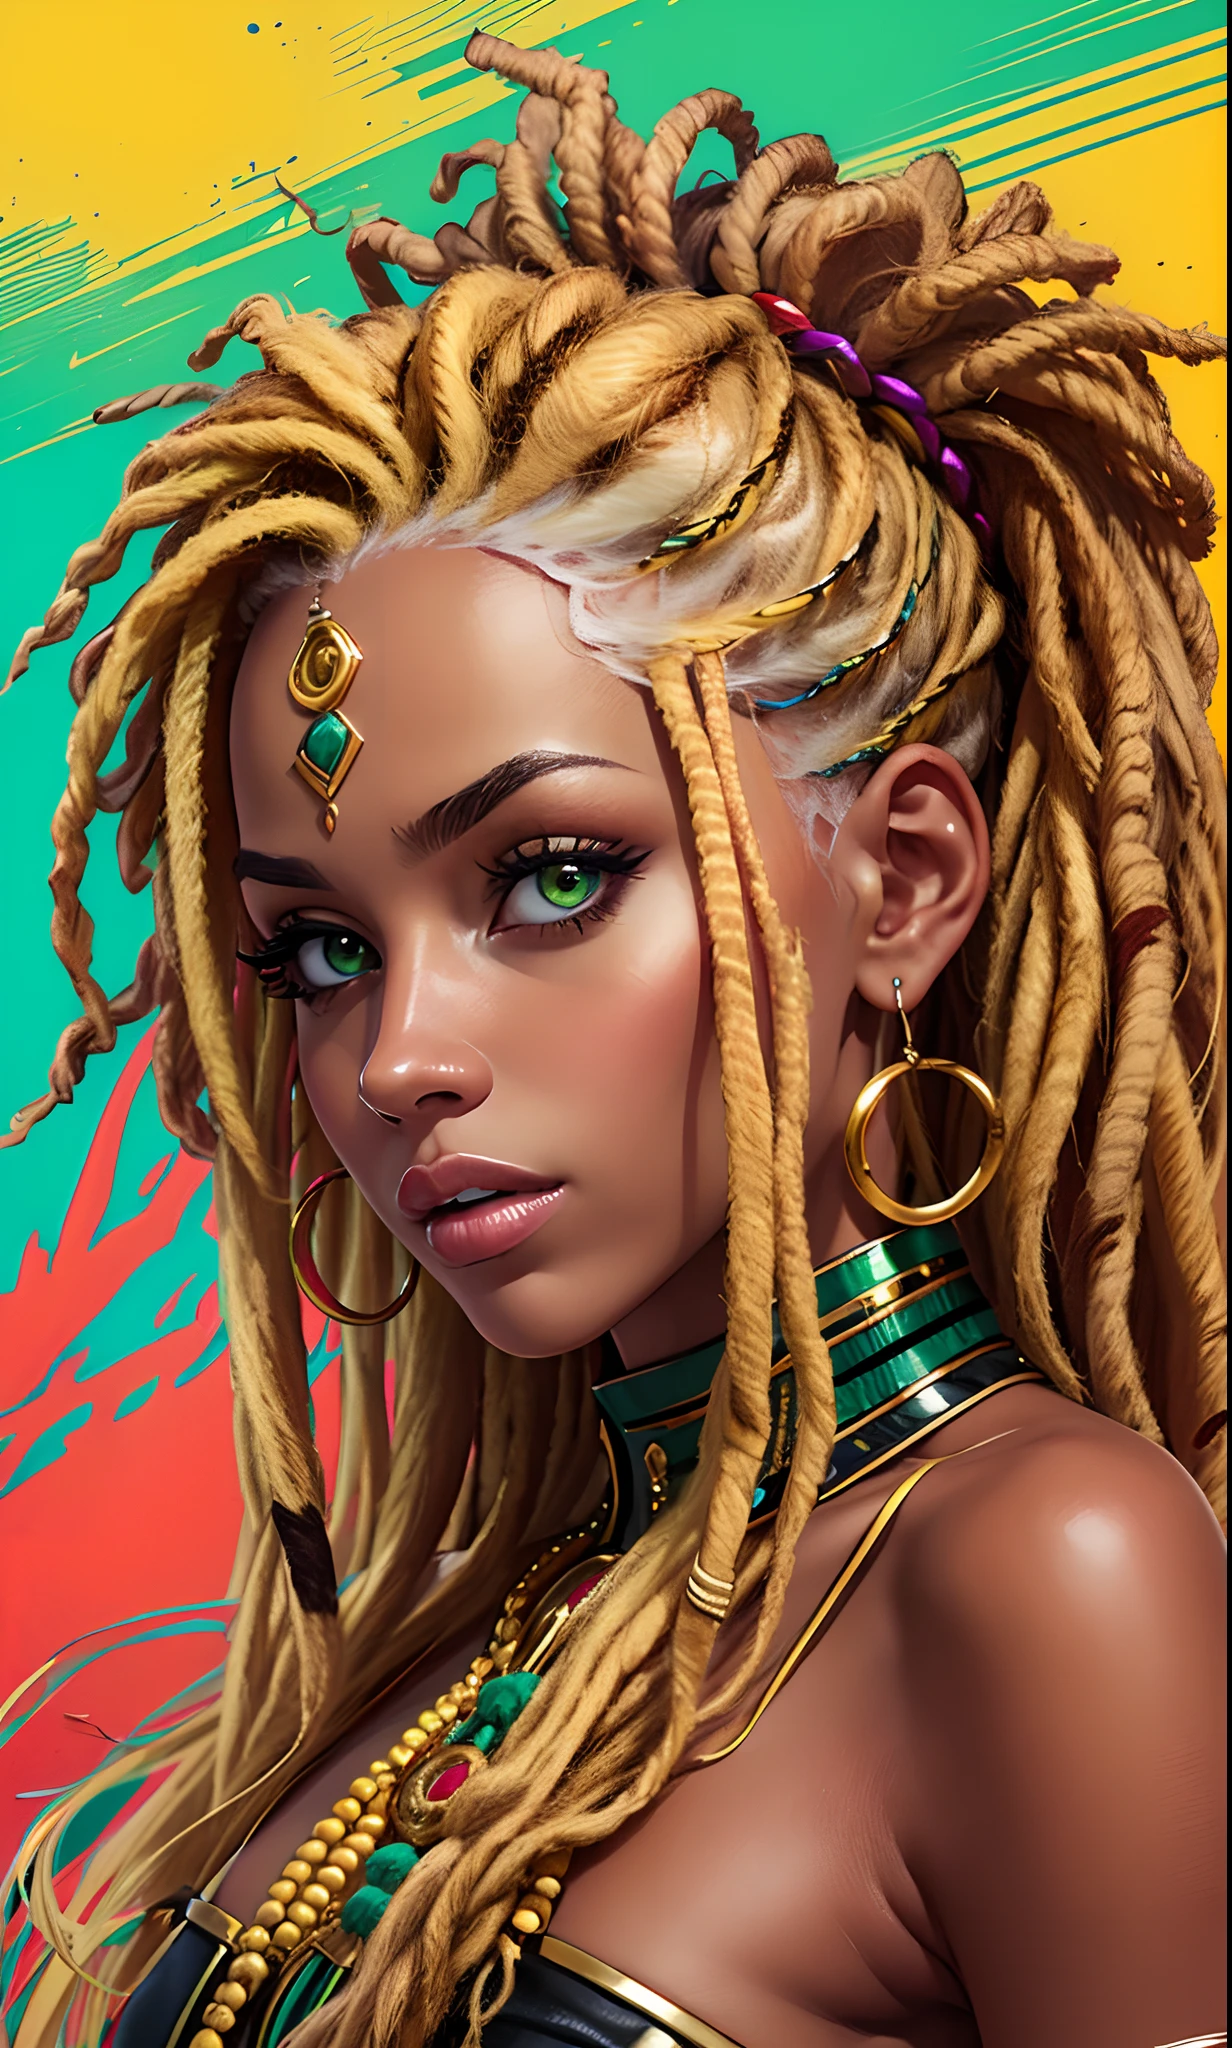 Masterfully, Una mujer rubia muestra sus rastas en vibrantes tonos de colores jamaicanos.. Cada pavor es una fusión de amarillo., verde y rojo, Capturando la cultura y el estilo de una manera excepcional.. La imagen resalta la profesionalidad al retratar la audacia y autenticidad del peinado.. --auto --s2